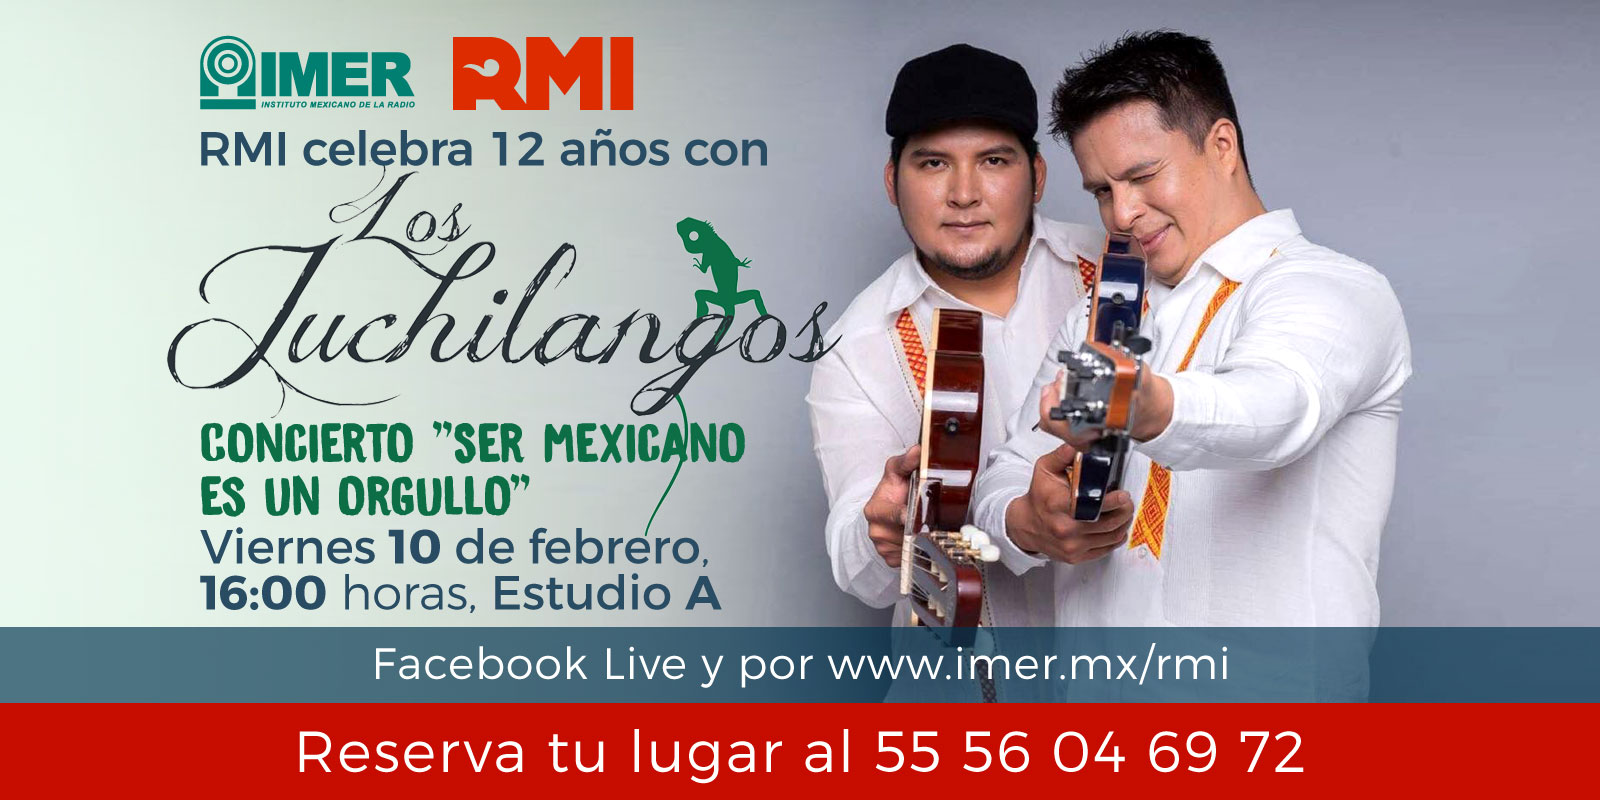 RMI celebra 12 años con Los Juchilangos, concierto: "Ser mexicano es un orgullo", Viernes 10 de febrero a las 16 hrs. En vivo a través de www.imer.mx/rmi y en facebook live. Reserva tu lugar al 55 56 04 69 72. Radio México Internacional, emisora virtual.